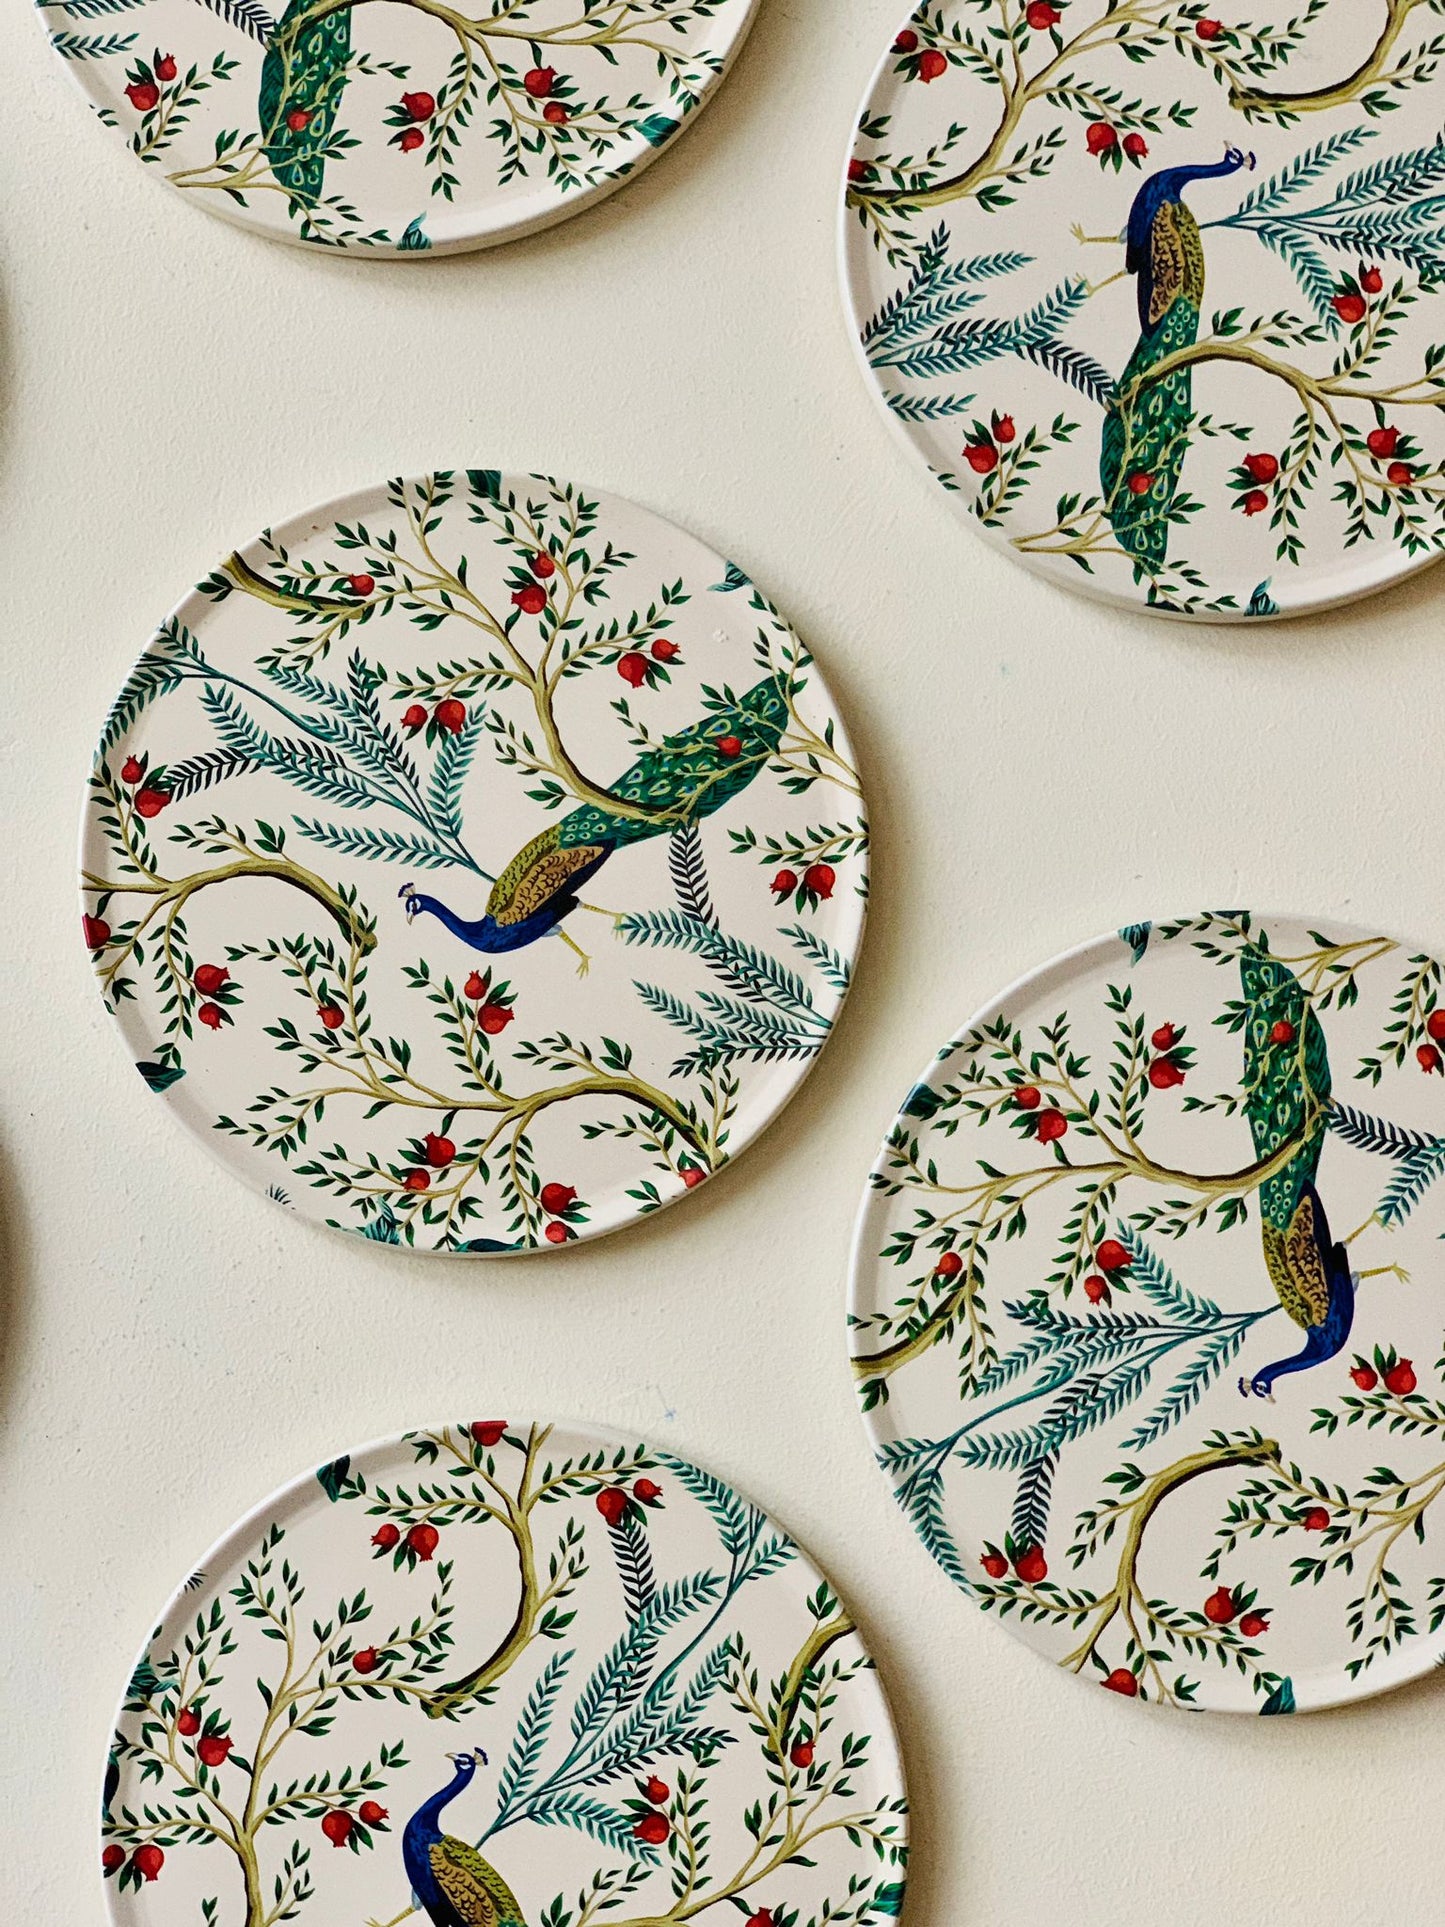 Pretty Peacock Coasters